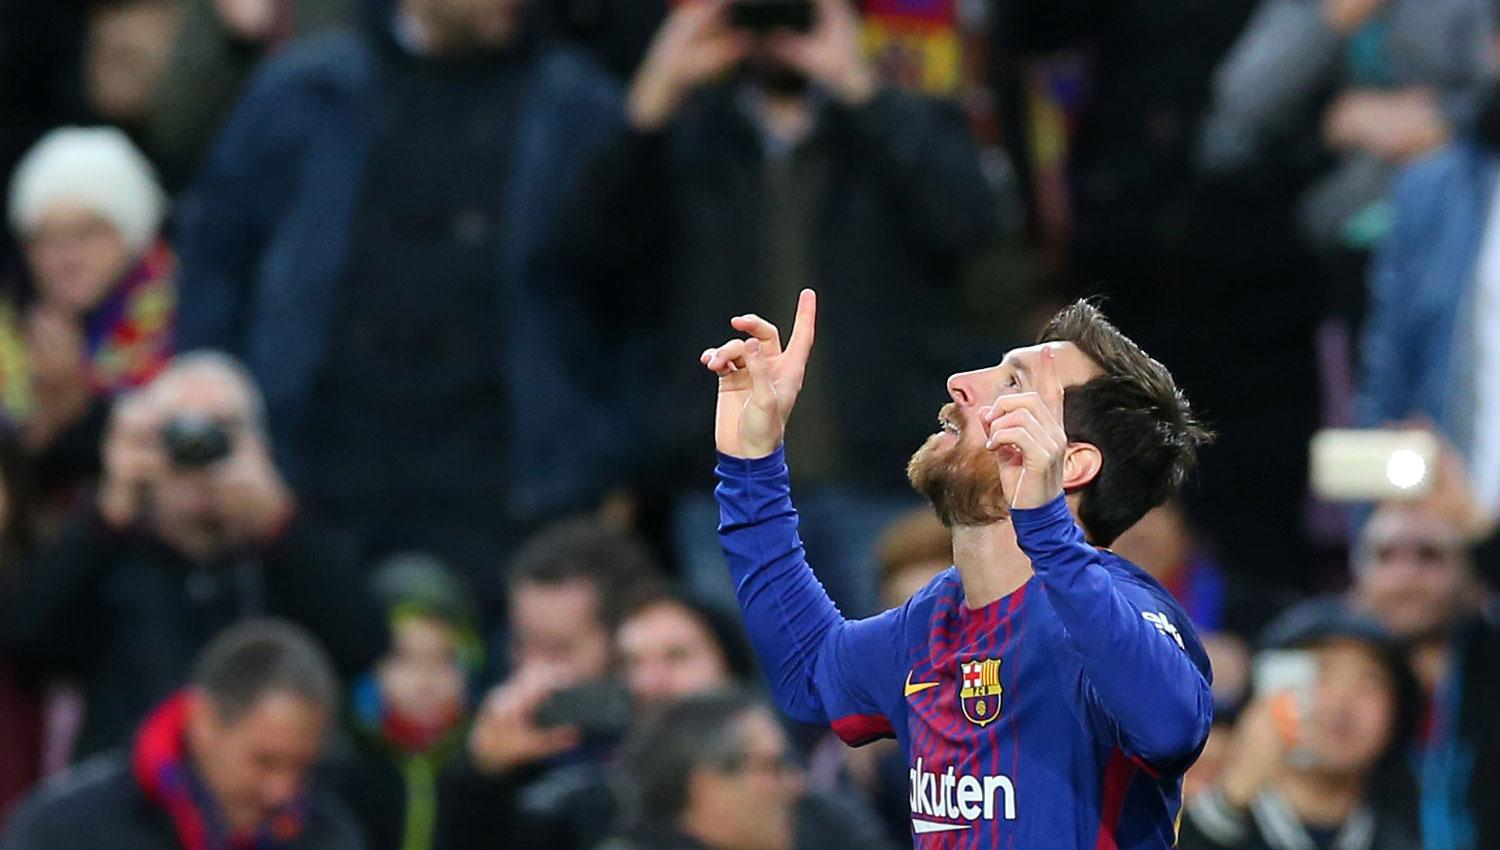 UN CLÁSICO. Messi anotó su gol N° 15 de la temporada y el primero de 2018. REUTERS